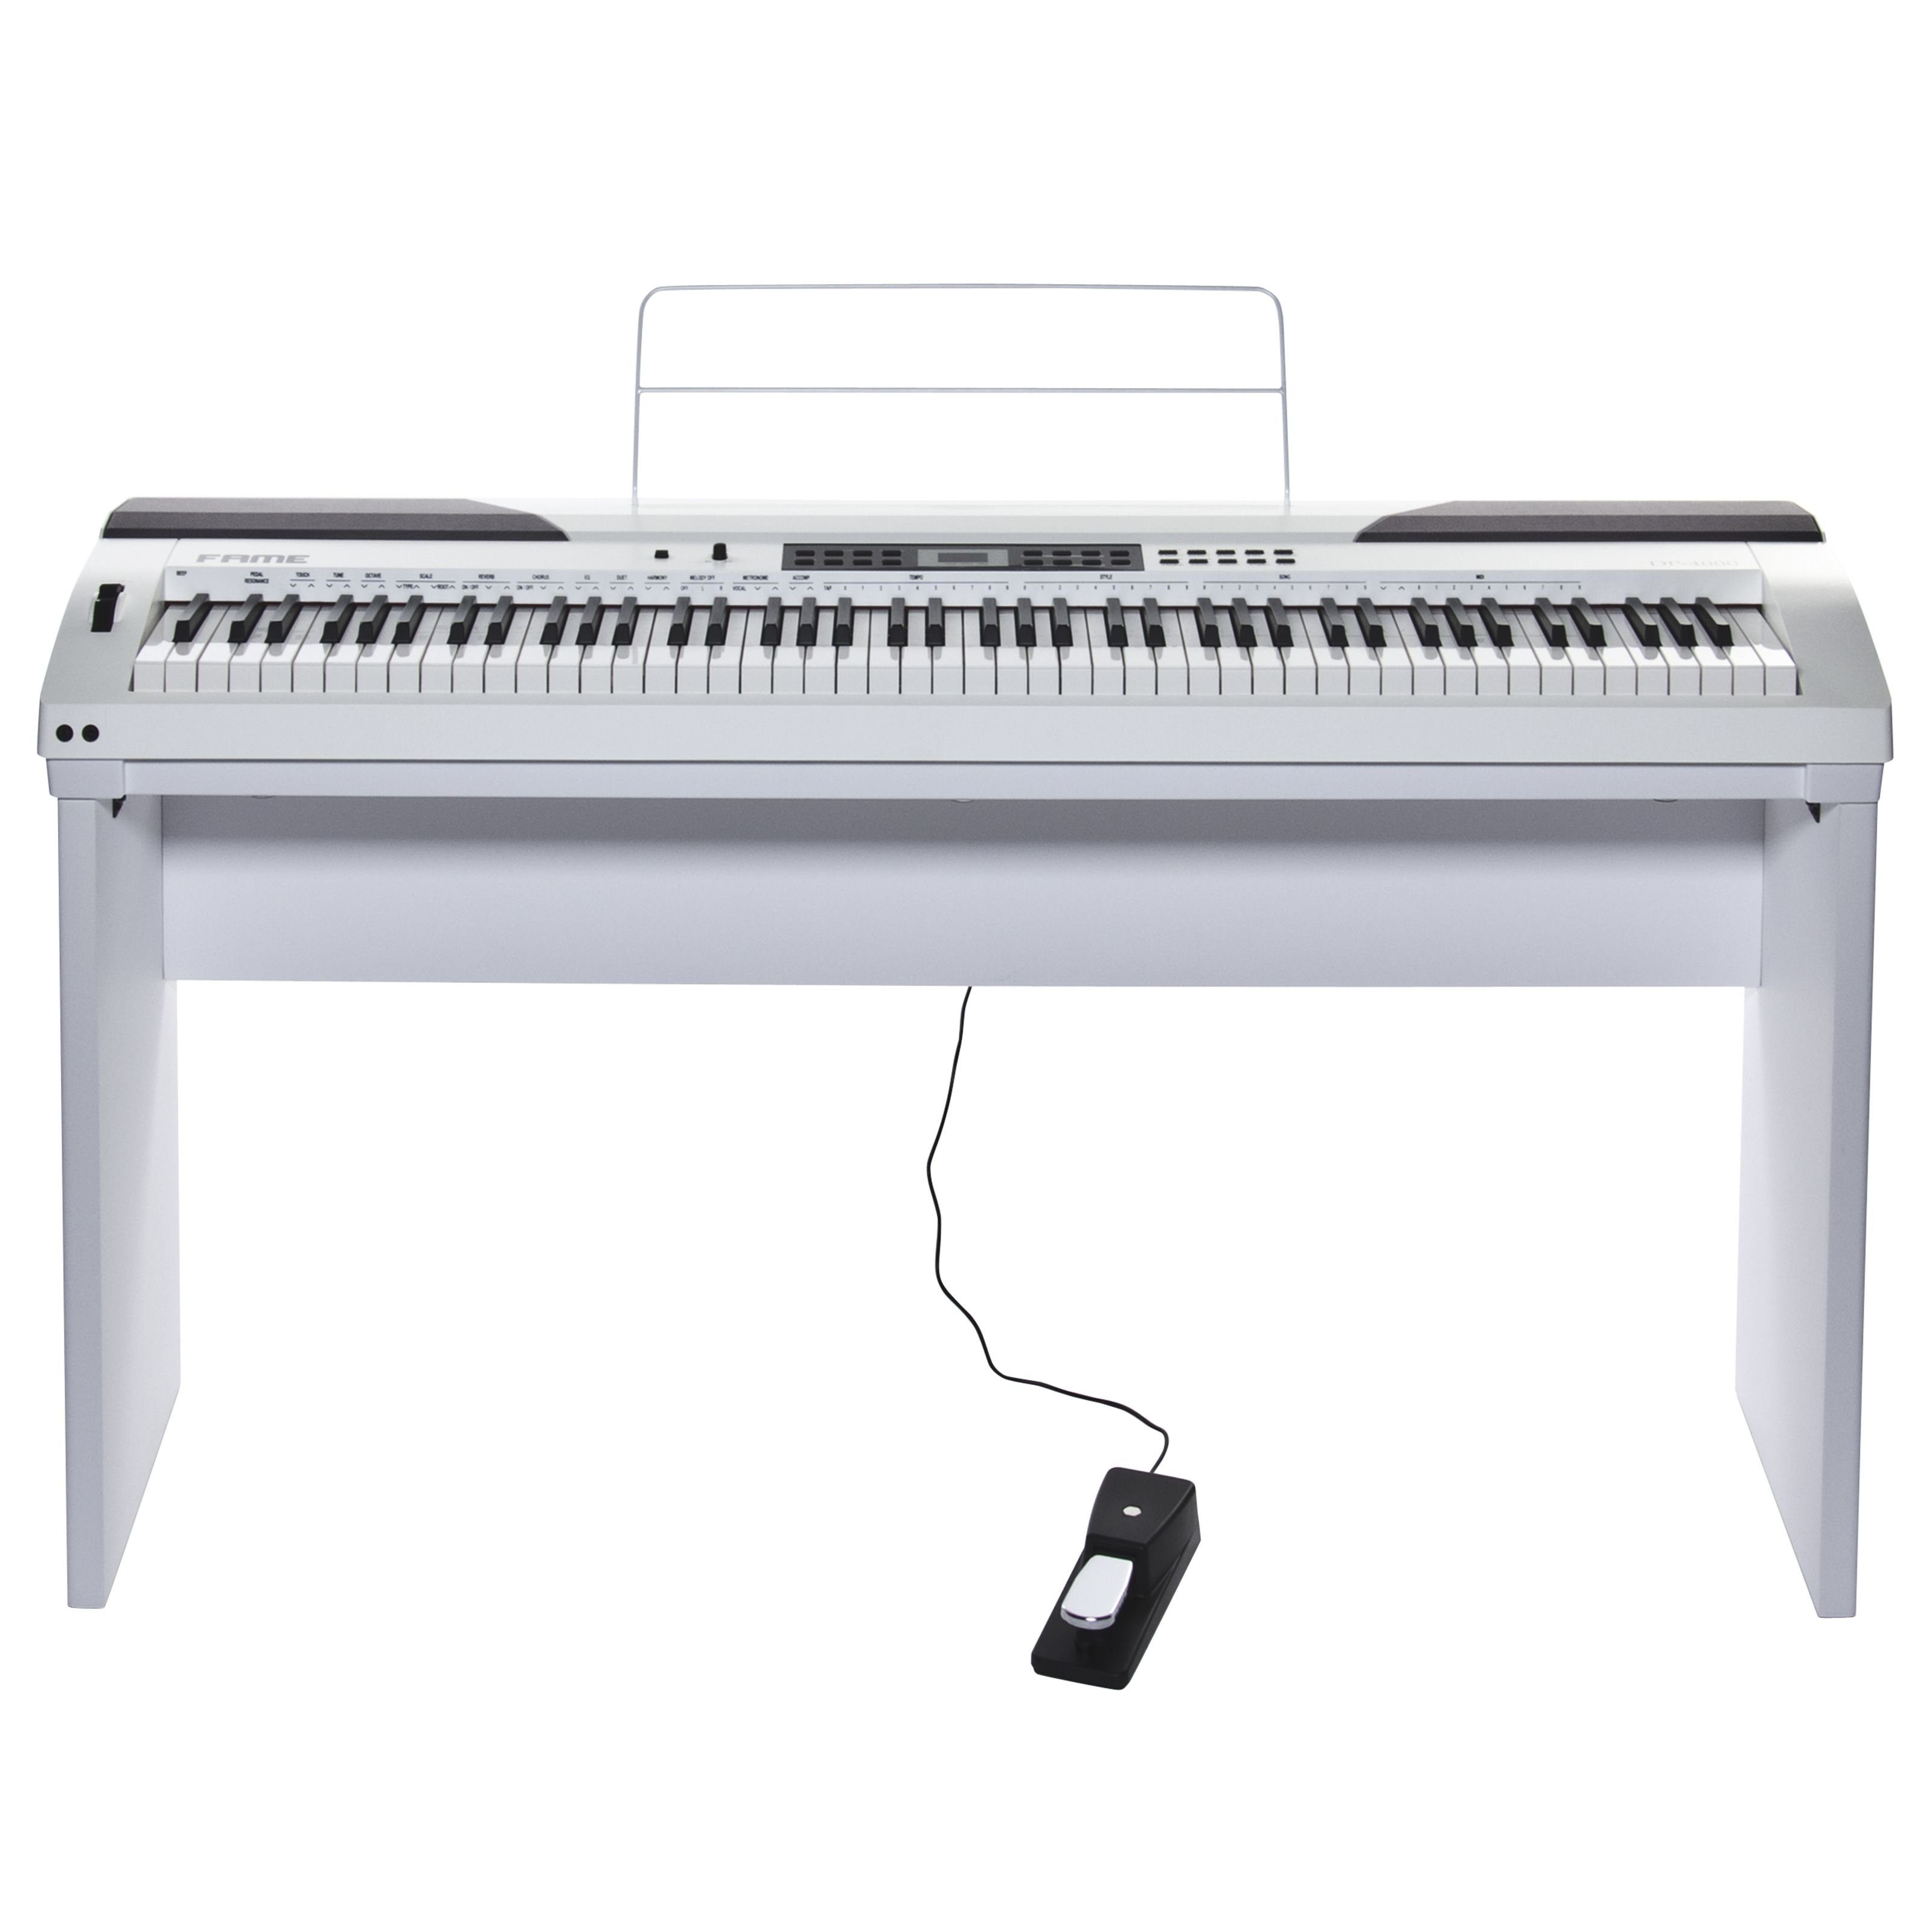 FAME Digitalpiano, DP-4000 E-Piano mit Hammermechanik, anschlagdynamischen  88 Tasten, schöner Klavierklang, 20 Orchesterklangfarben, 128-fache  Polyphonie, inkl. Ständer und Pedal, Digital Piano in weiß online kaufen |  OTTO